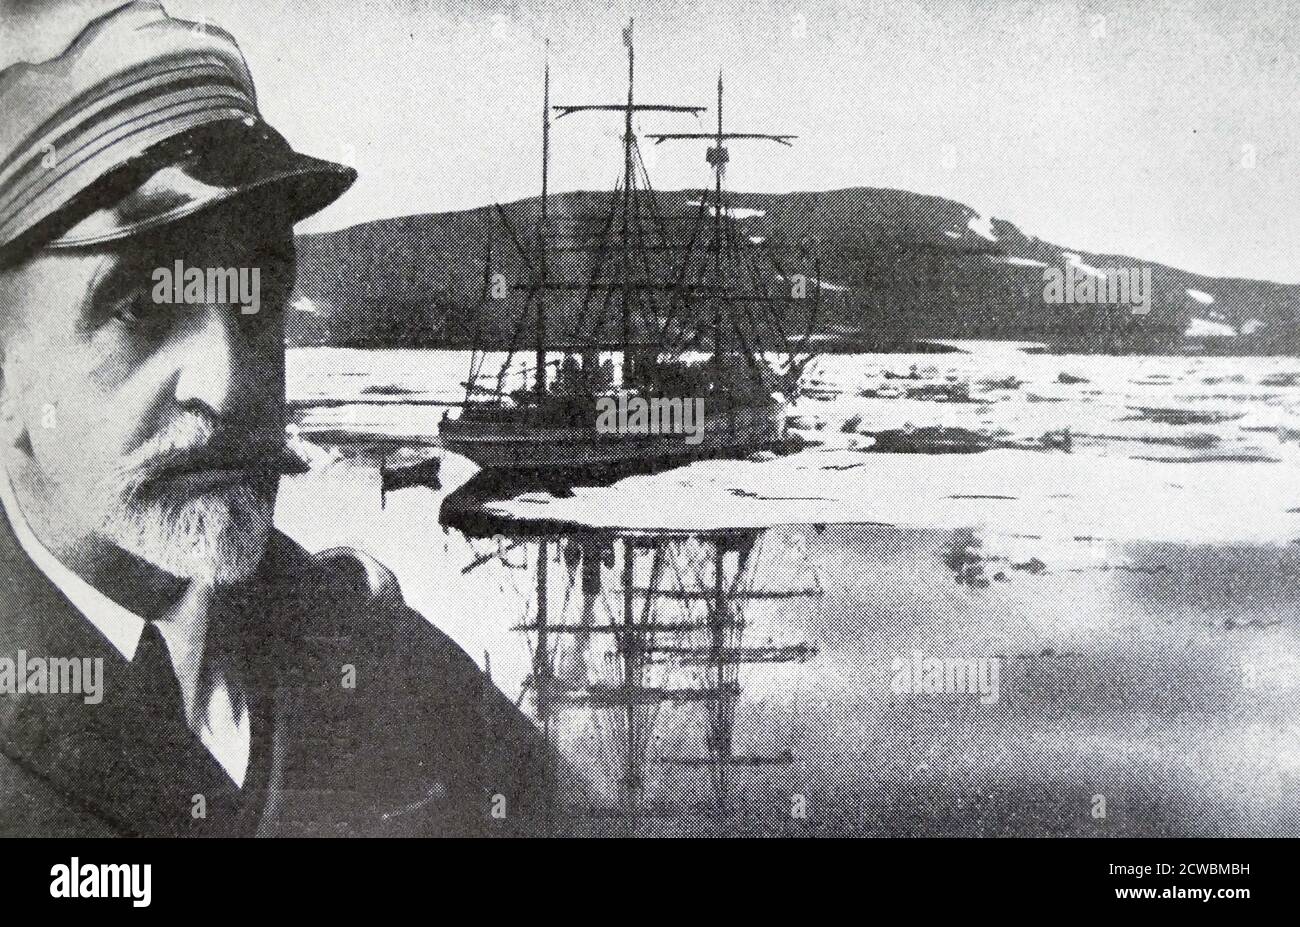 ¿Fotografía en blanco y negro sobre el naufragio del barco Pourquois-Pas? Cerca de Islandia, capitaneado por Jean-Baptiste Charcot (1867-1936); un retrato de Charcot. ¿Pourquoi Pas? IV fue el cuarto buque construido para Jean-Baptiste Charcot, que completó la segunda expedición Charcot de las regiones antárticas de 1908 a 1910. Charcot murió a bordo cuando el barco naufragó el 16 de septiembre de 1936, frente a la costa de Islandia. De los cuarenta hombres a bordo, solo uno sobrevivió. Foto de stock